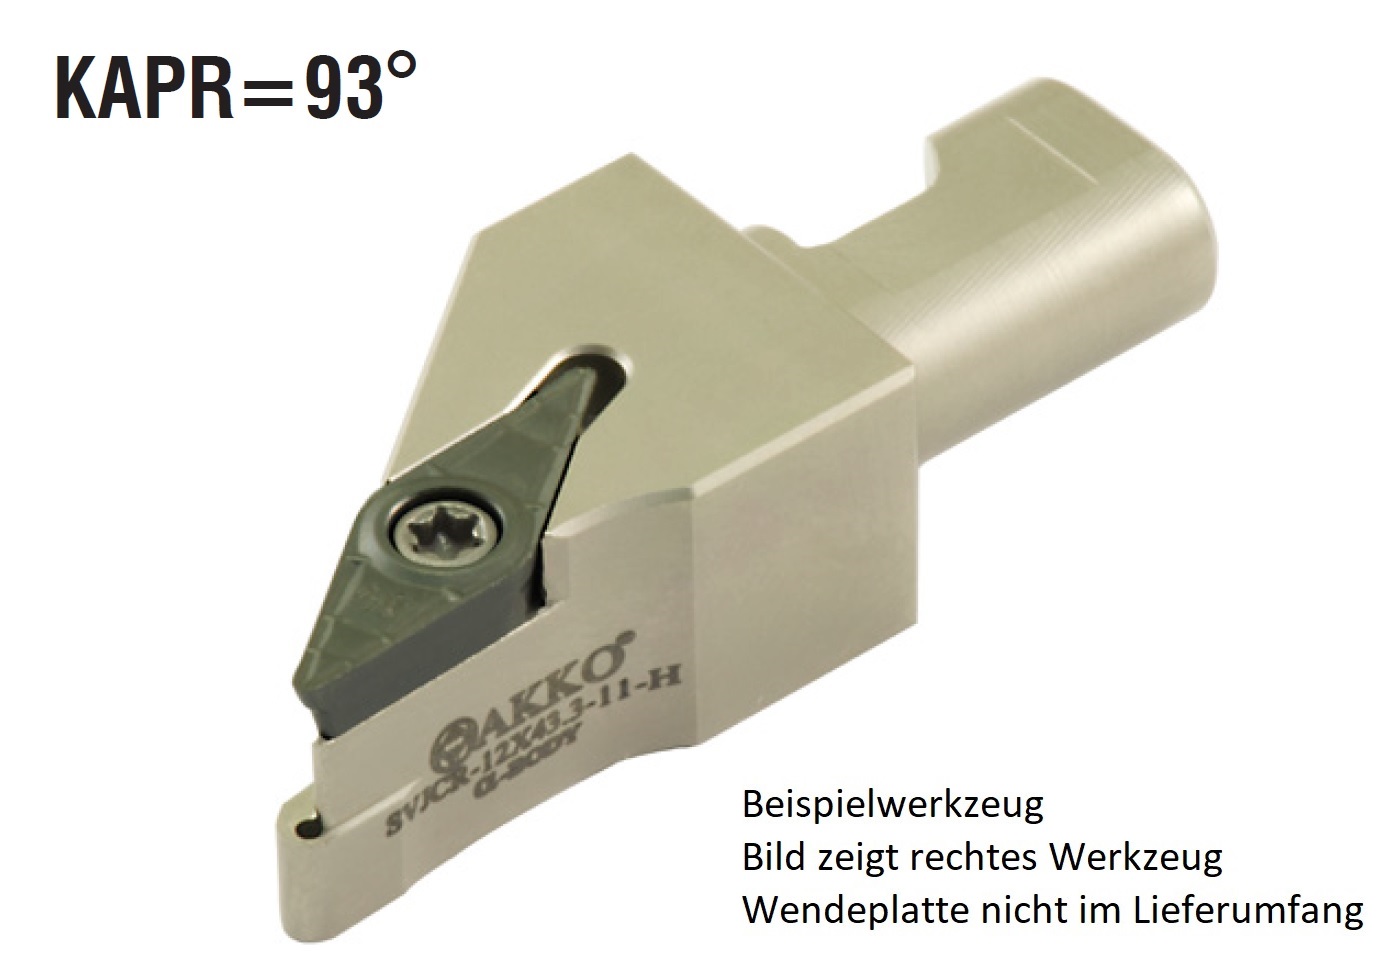 AKKO-Wechselkopf Größe 16 für modulares Langdrehautomaten-Werkzeug SEC-tools
rechts, für ISO-WSP VC.T 110302, ohne Innenkühlung